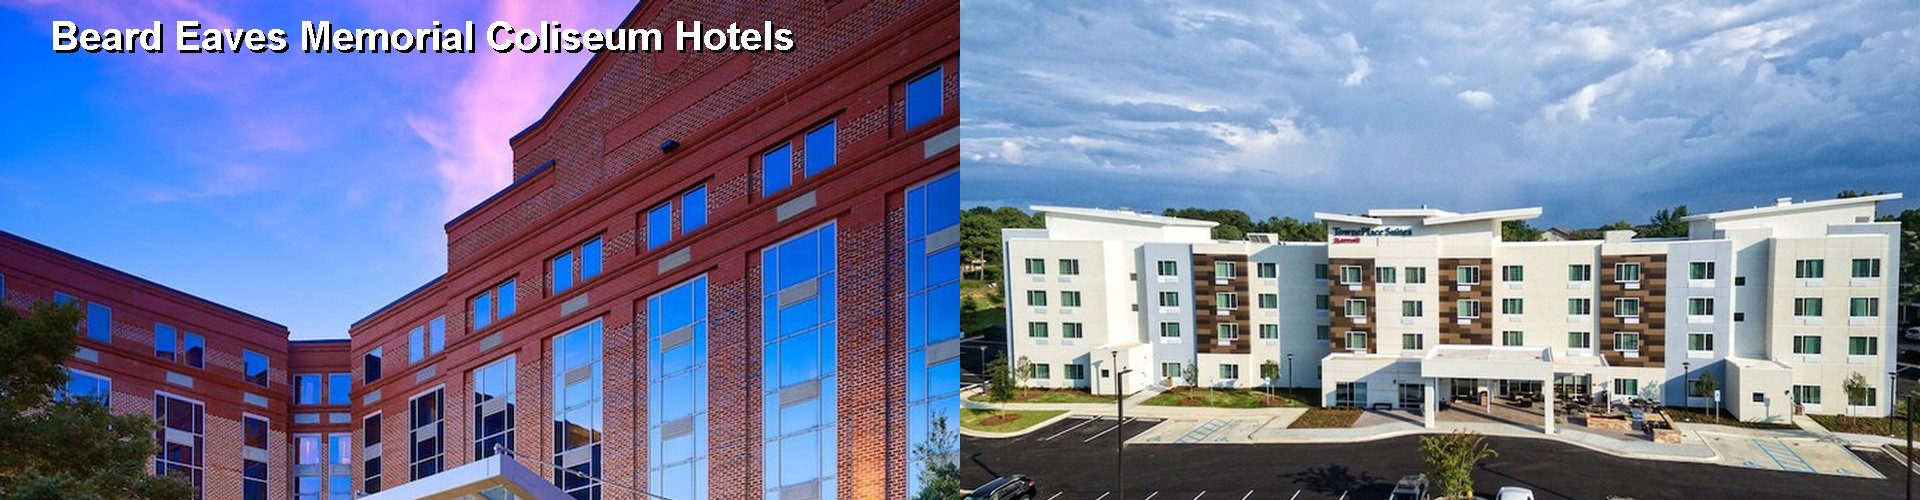 4 Best Hotels near Beard Eaves Memorial Coliseum